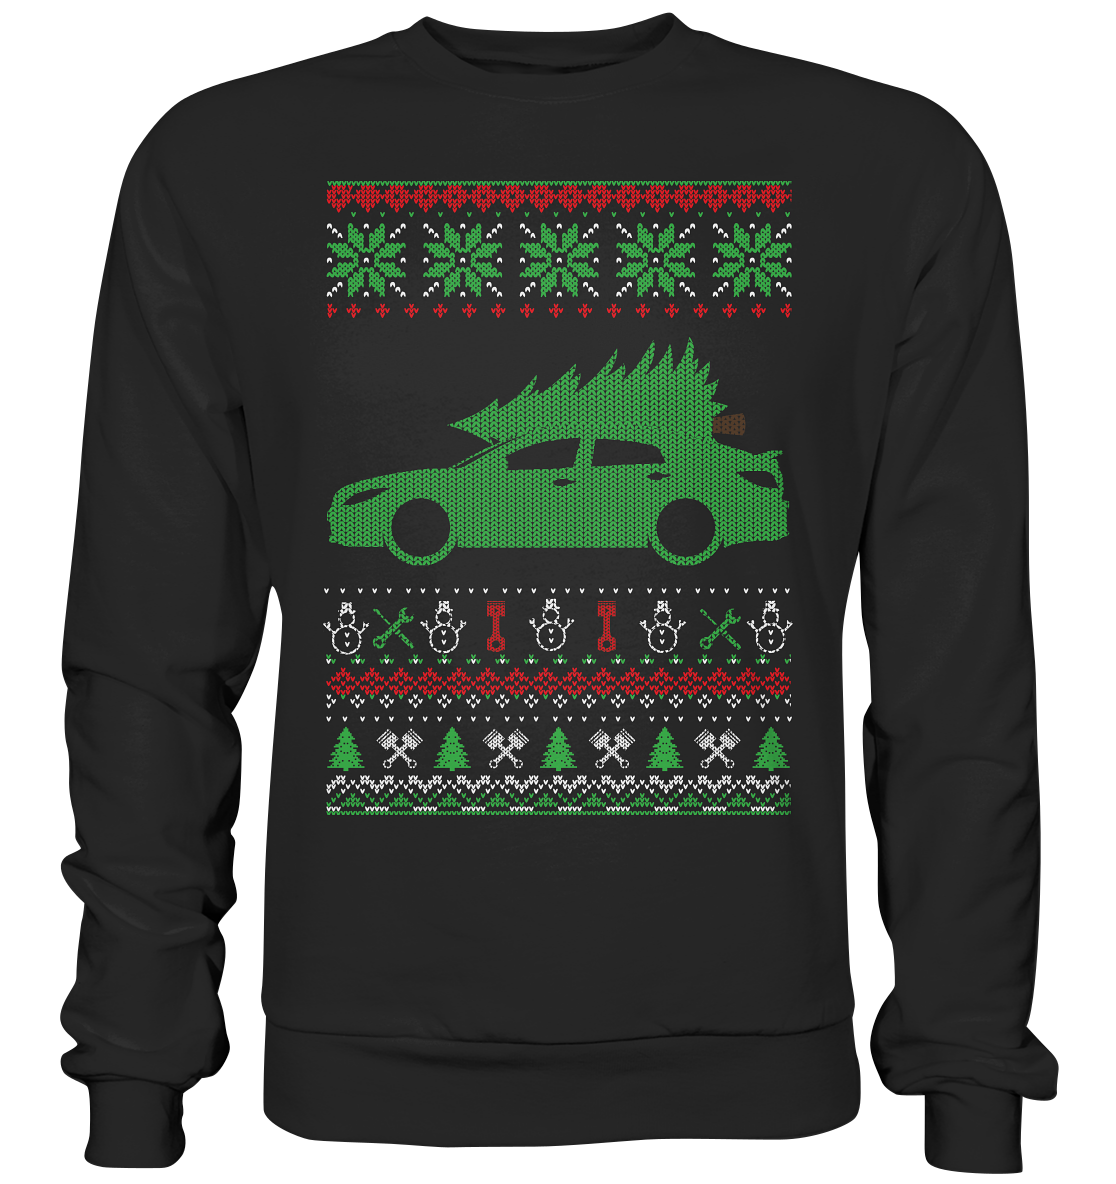 CODUGLY_MGK6GHL - Premium Sweatshirt